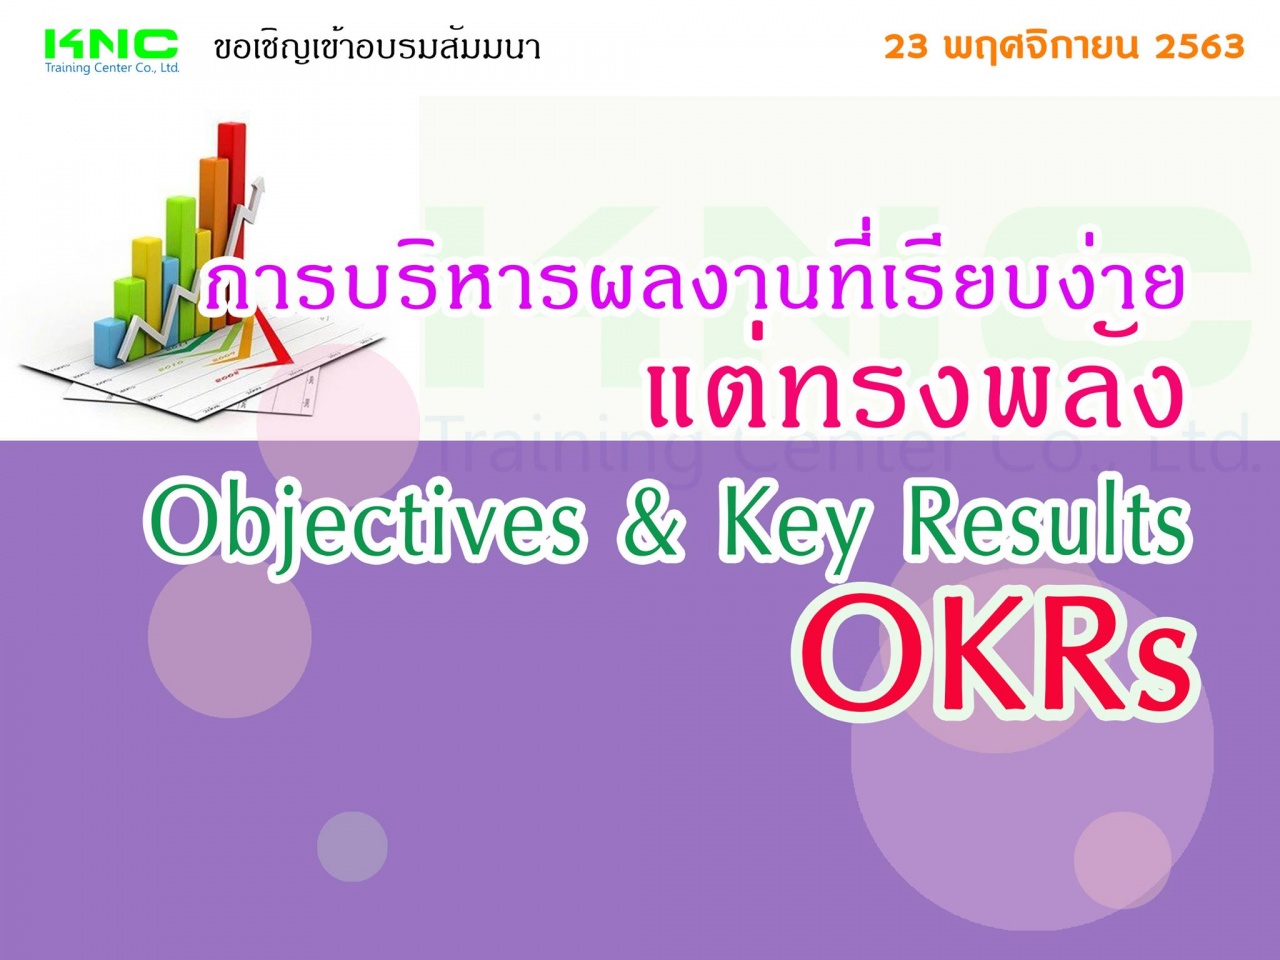 การบริหารผลงานที่เรียบง่ายแต่ทรงพลัง OKRs : Objectives & Key Results